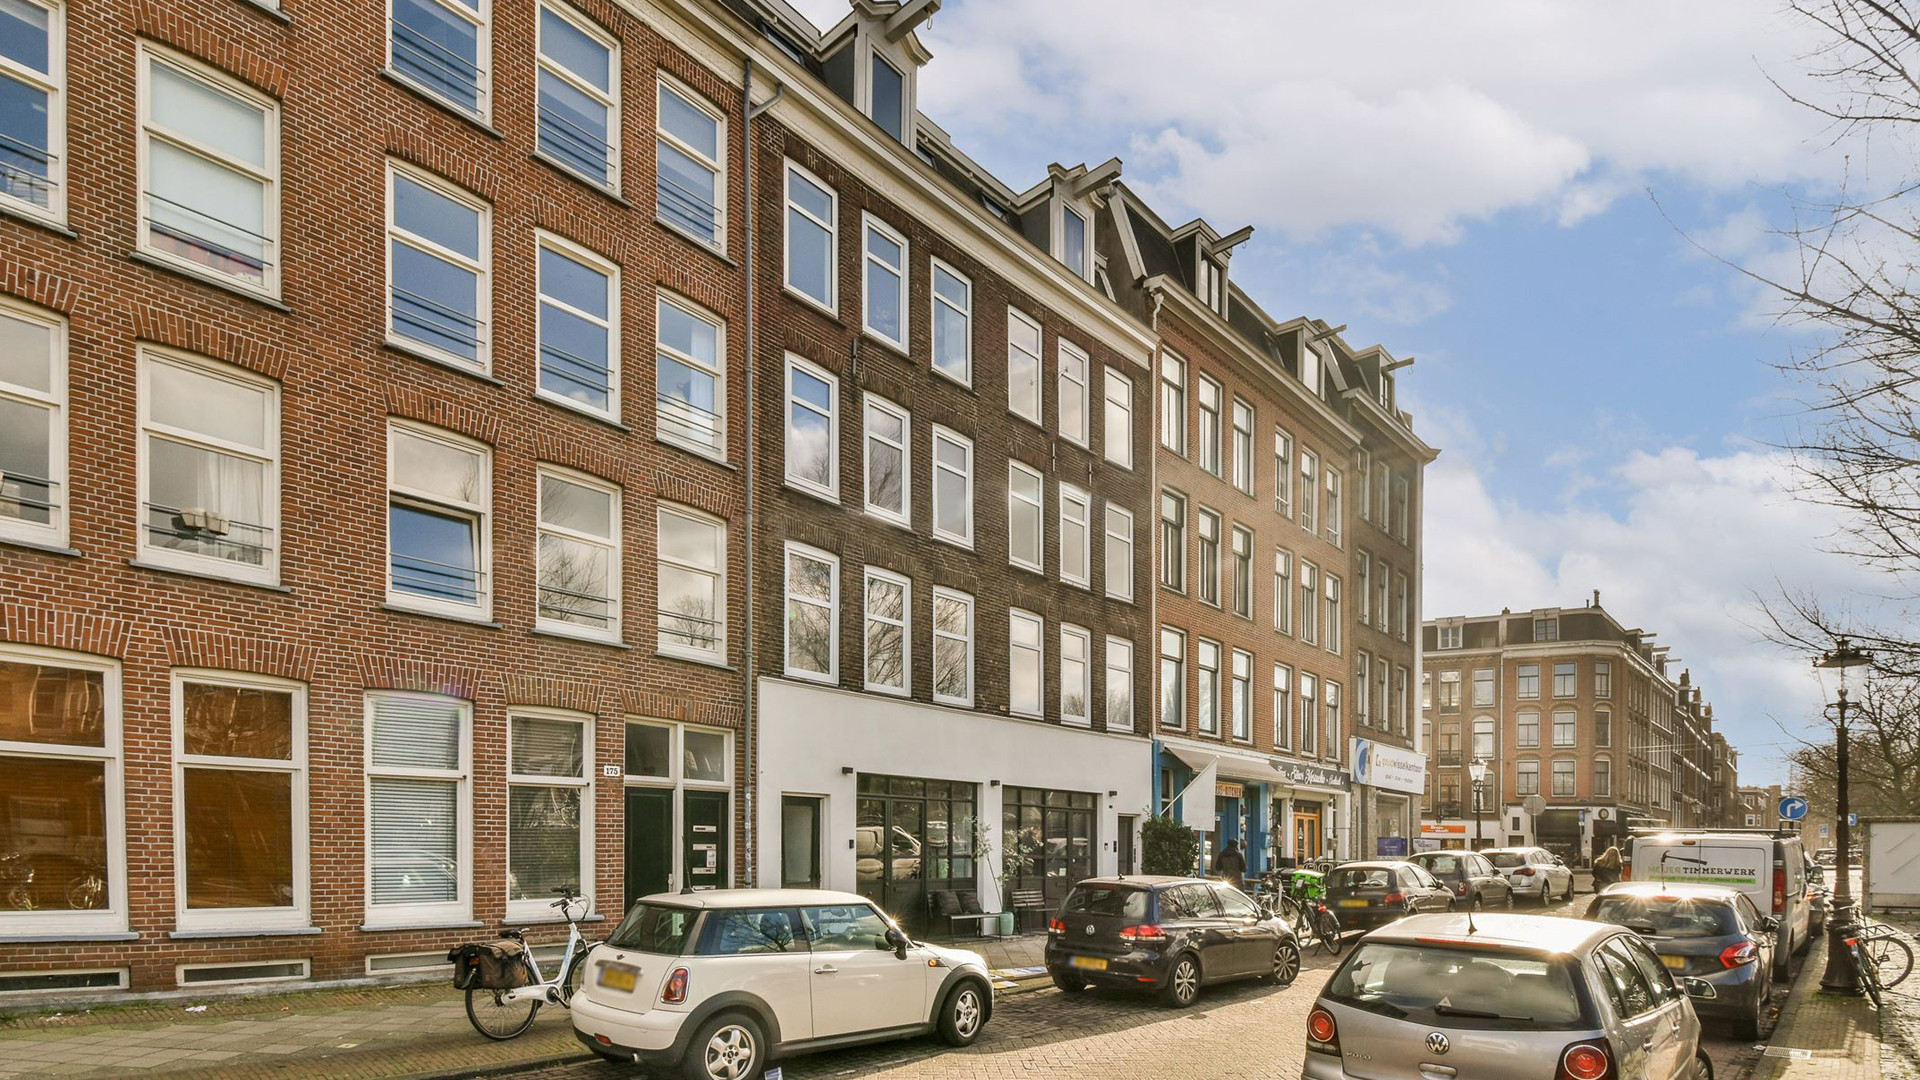 Art Rooijakkers heeft dit bijzondere dubbele benedenhuis in Amsterdam gekocht. Zie alle binnenfoto's 26